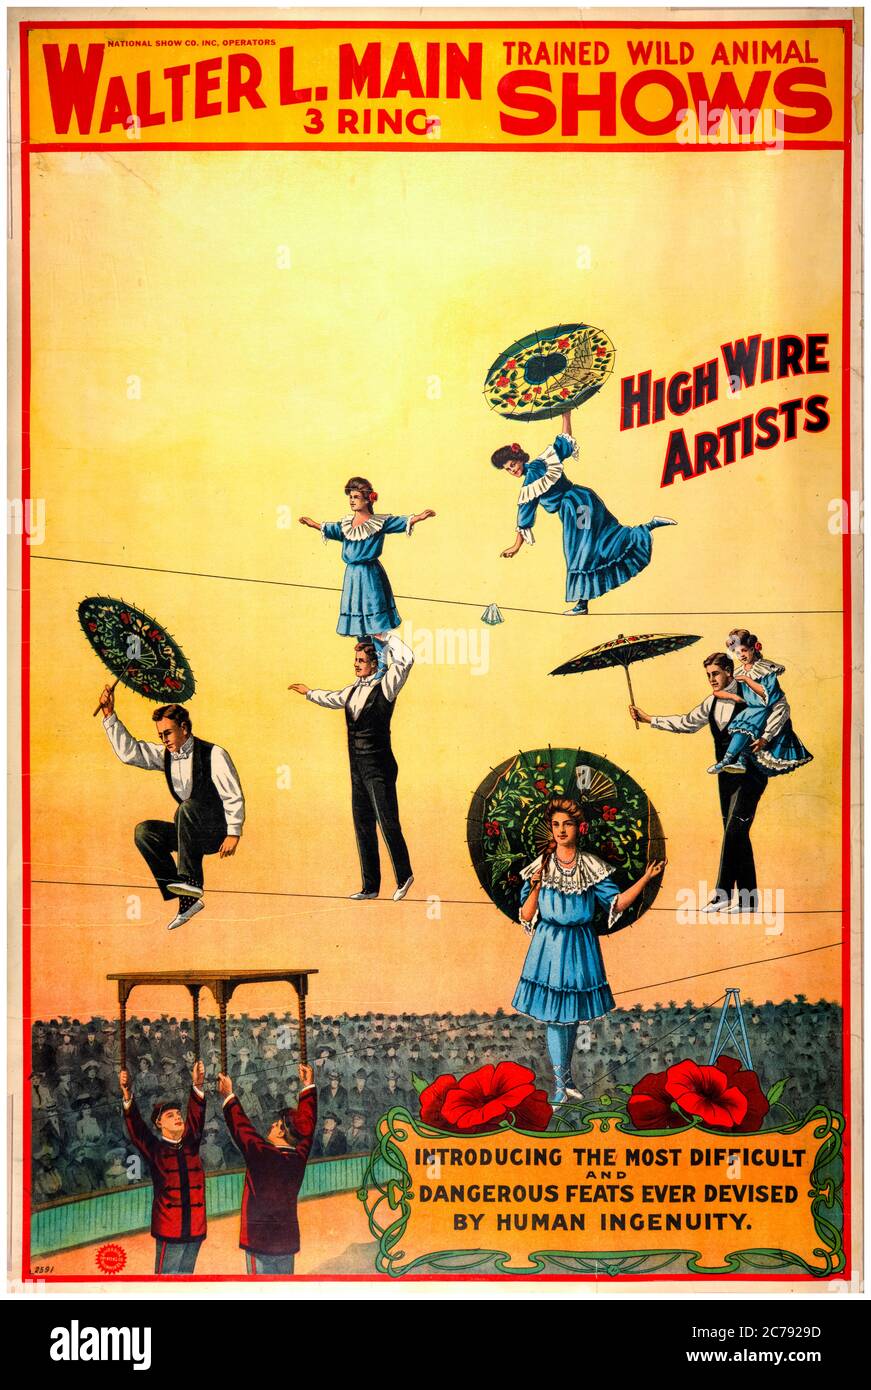 Walter L Main 3 anillo entrenado animales salvajes muestra cartel de circo con artistas de alto alambre, 1890-1904 Foto de stock